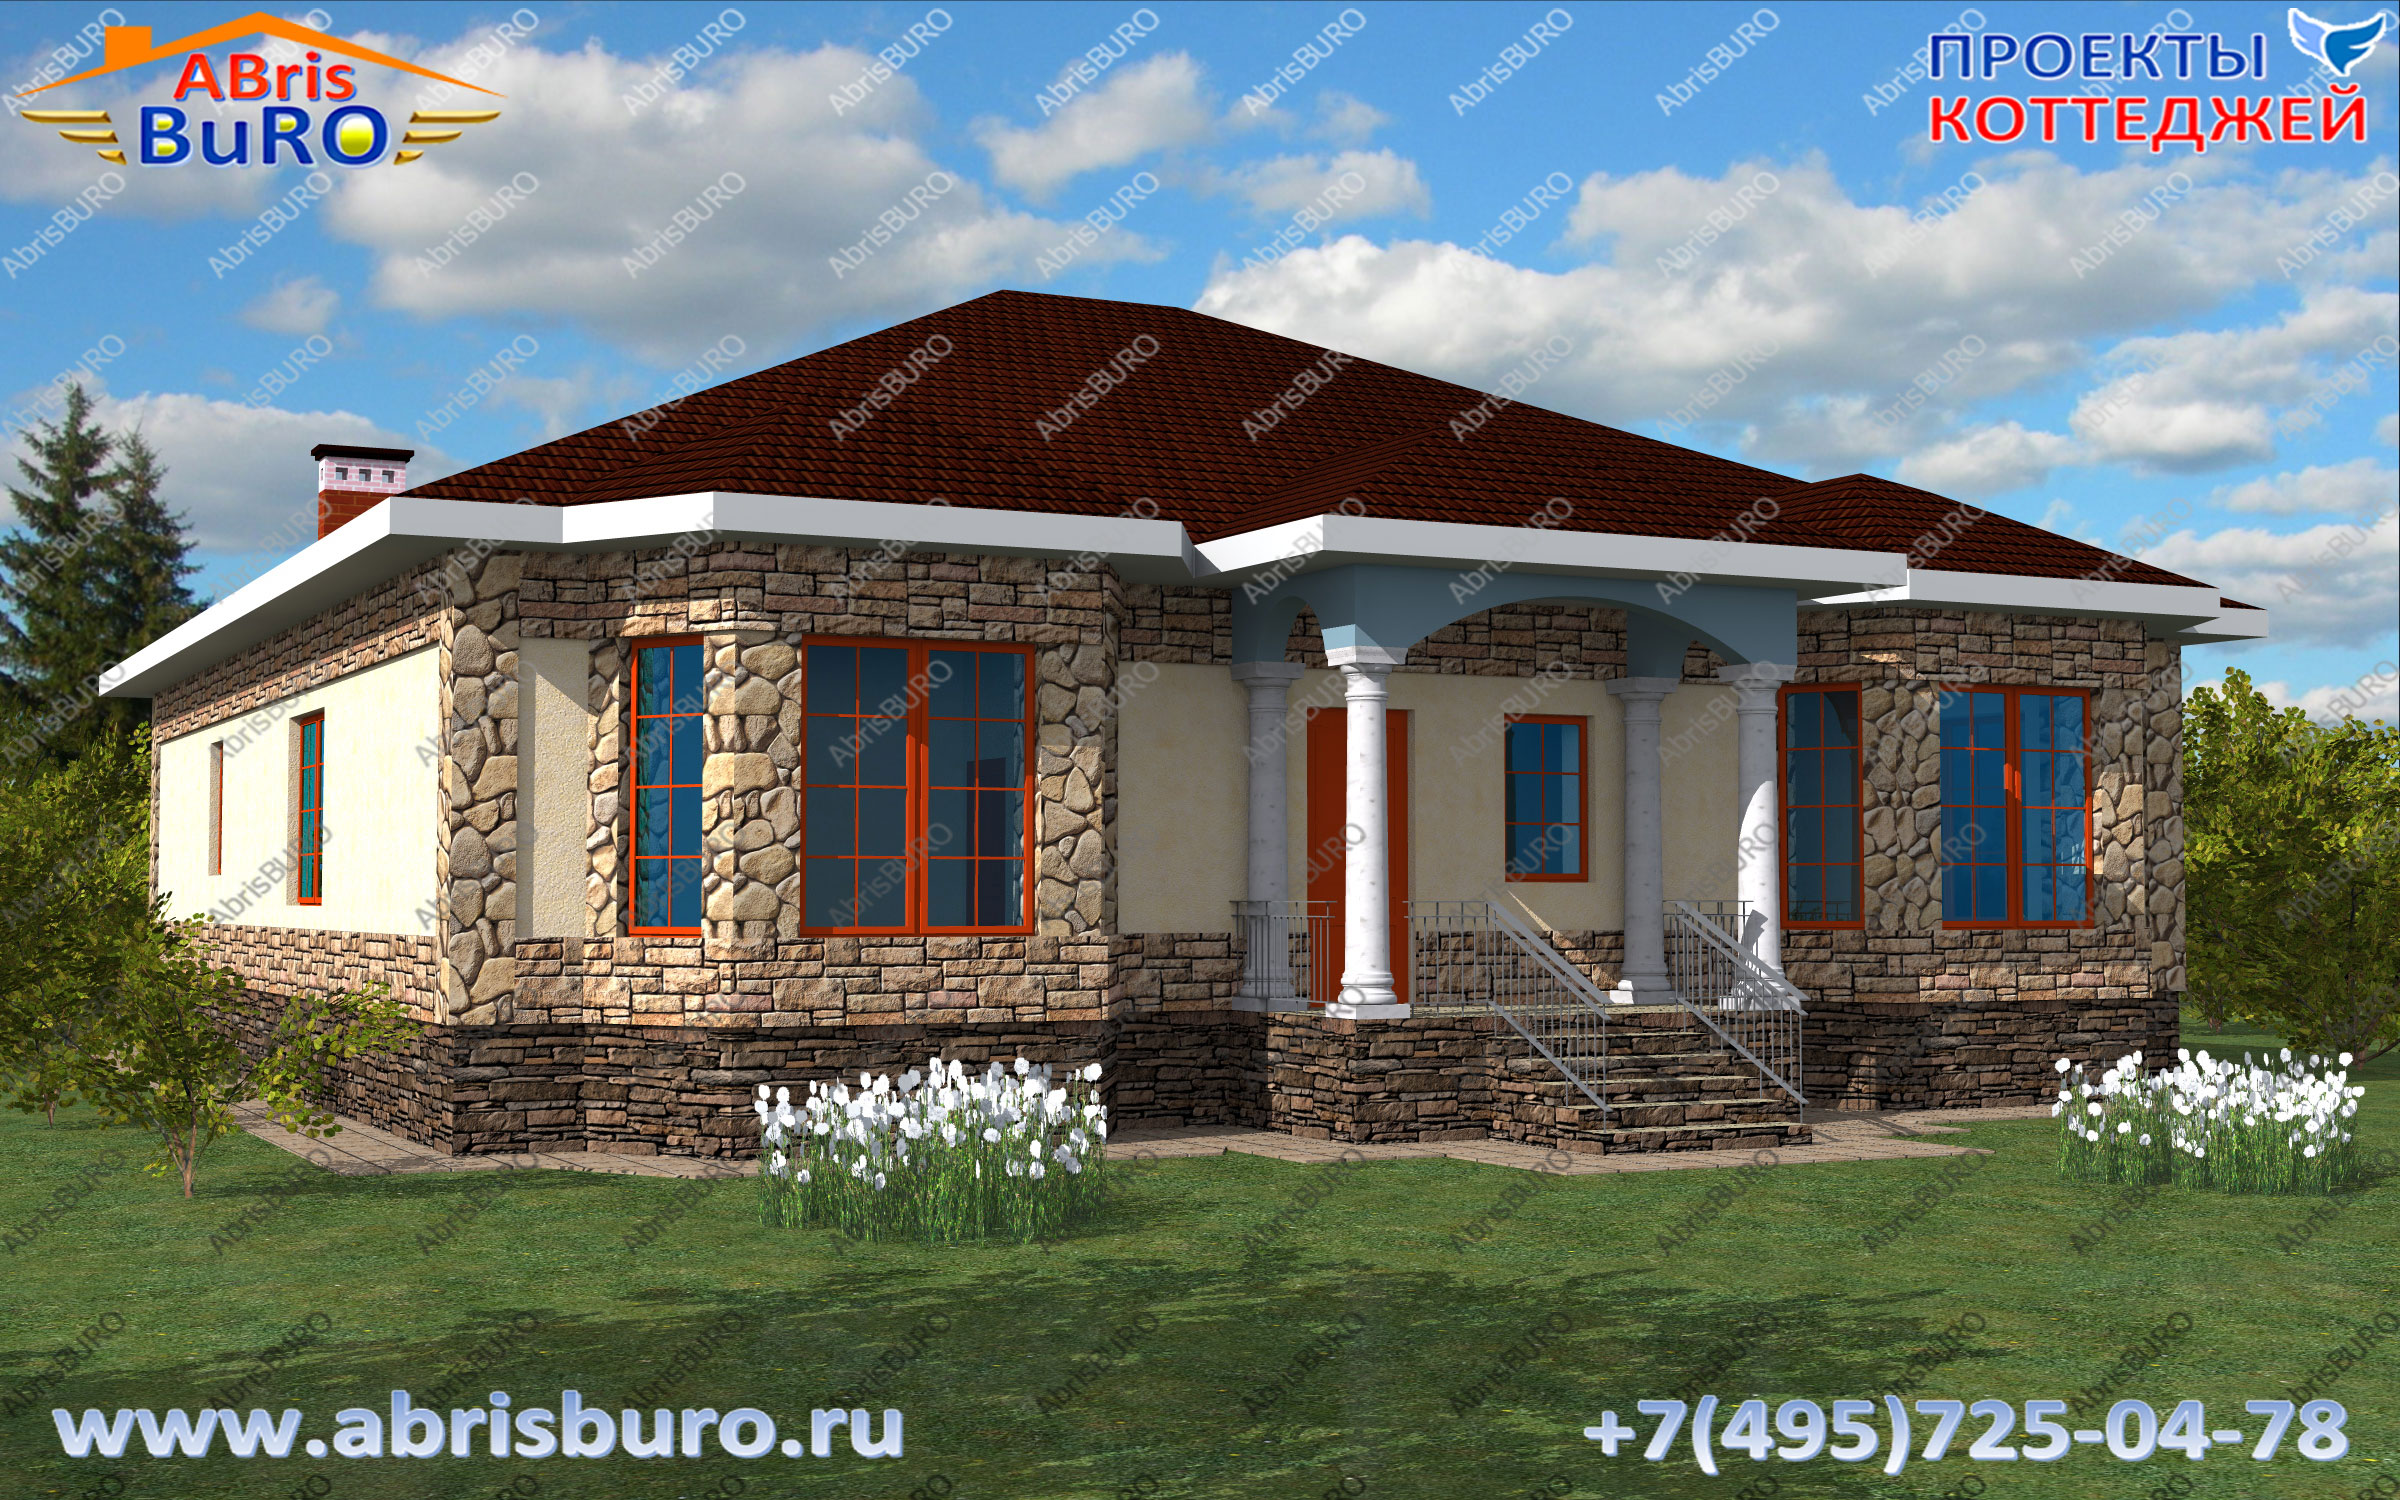 Проект дома с большим холлом K1693-198 на сайте www.abrisburo.ru